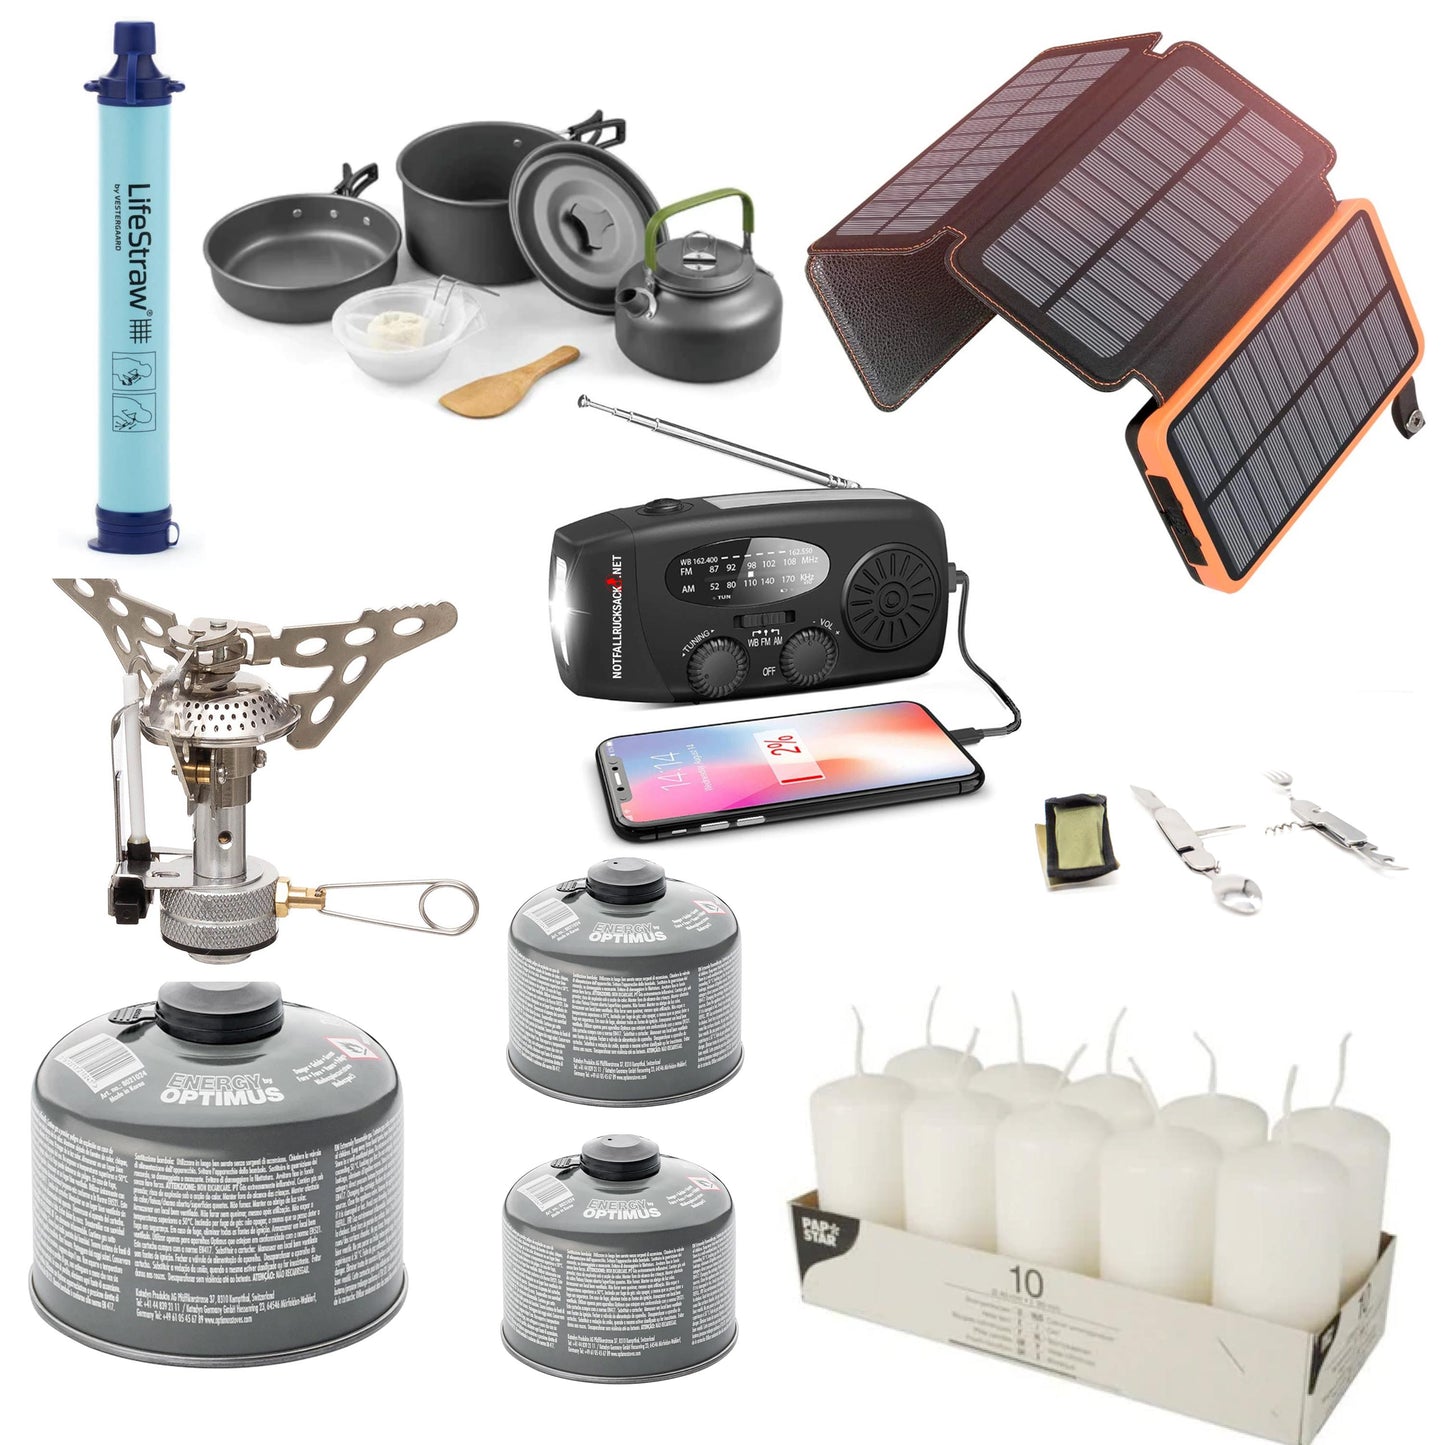 Stromausfallpaket Premium Blackout kit - mit Gaskocher, Kochset, Besteck, Solarpowerbank Wasserfilter Kerzen u.v.m